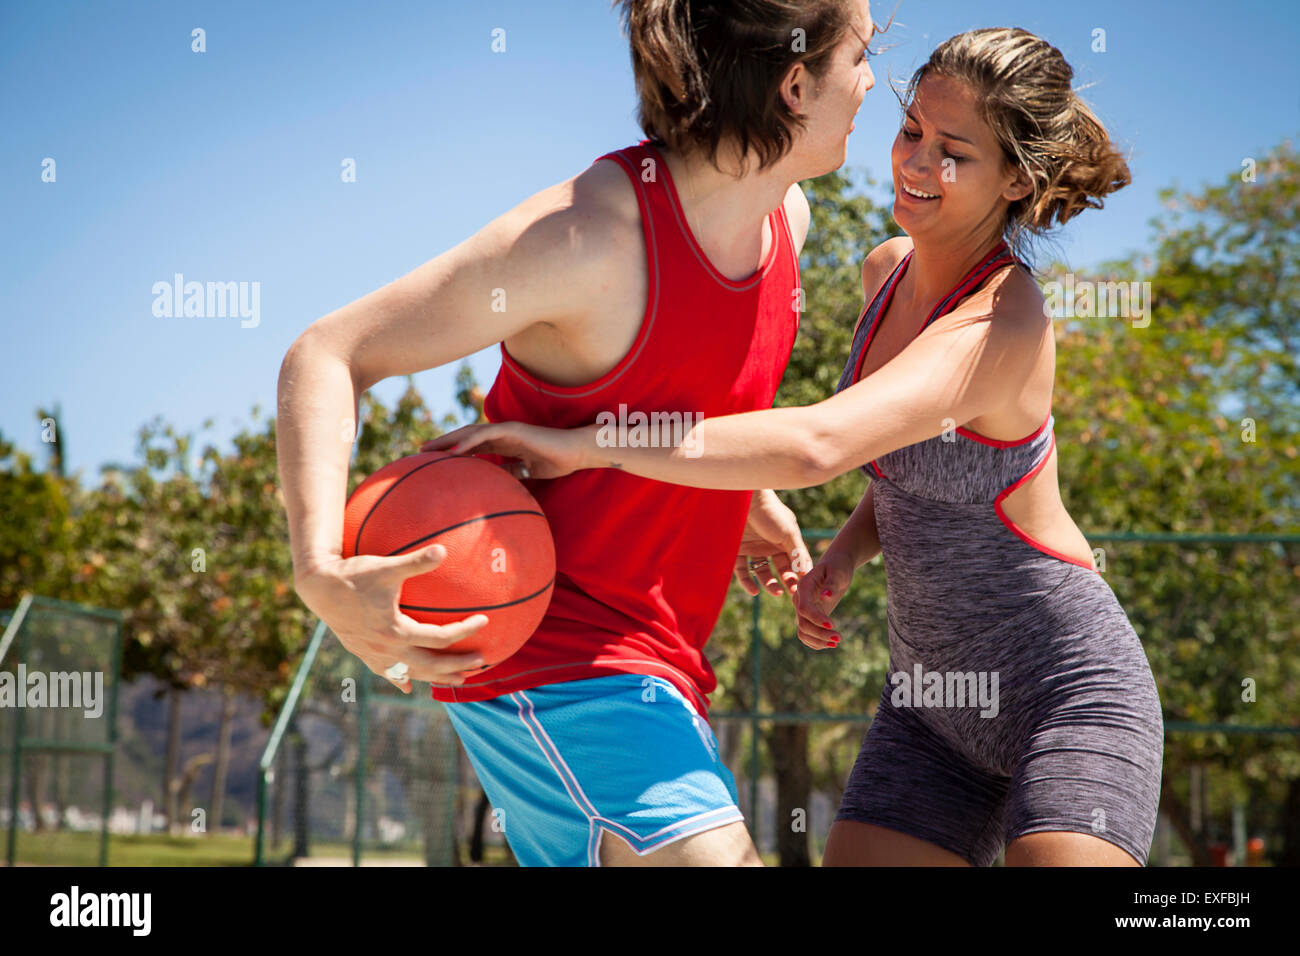 Junges Paar flirten am Basketballplatz Stockfoto